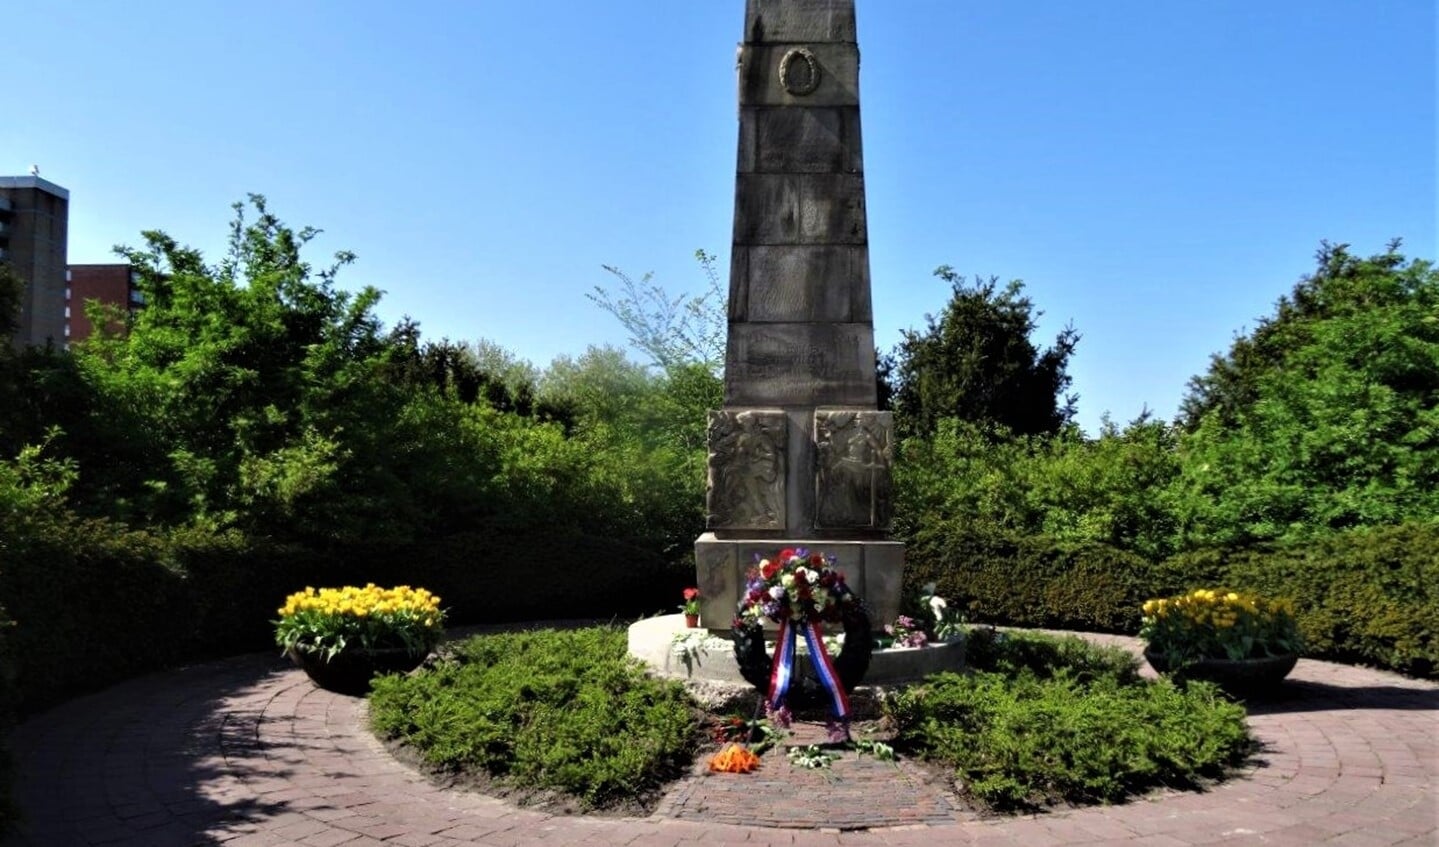 Monument De Naald aan de Prins Bernhardlaan in Voorburg (foto: Ap de Heus).